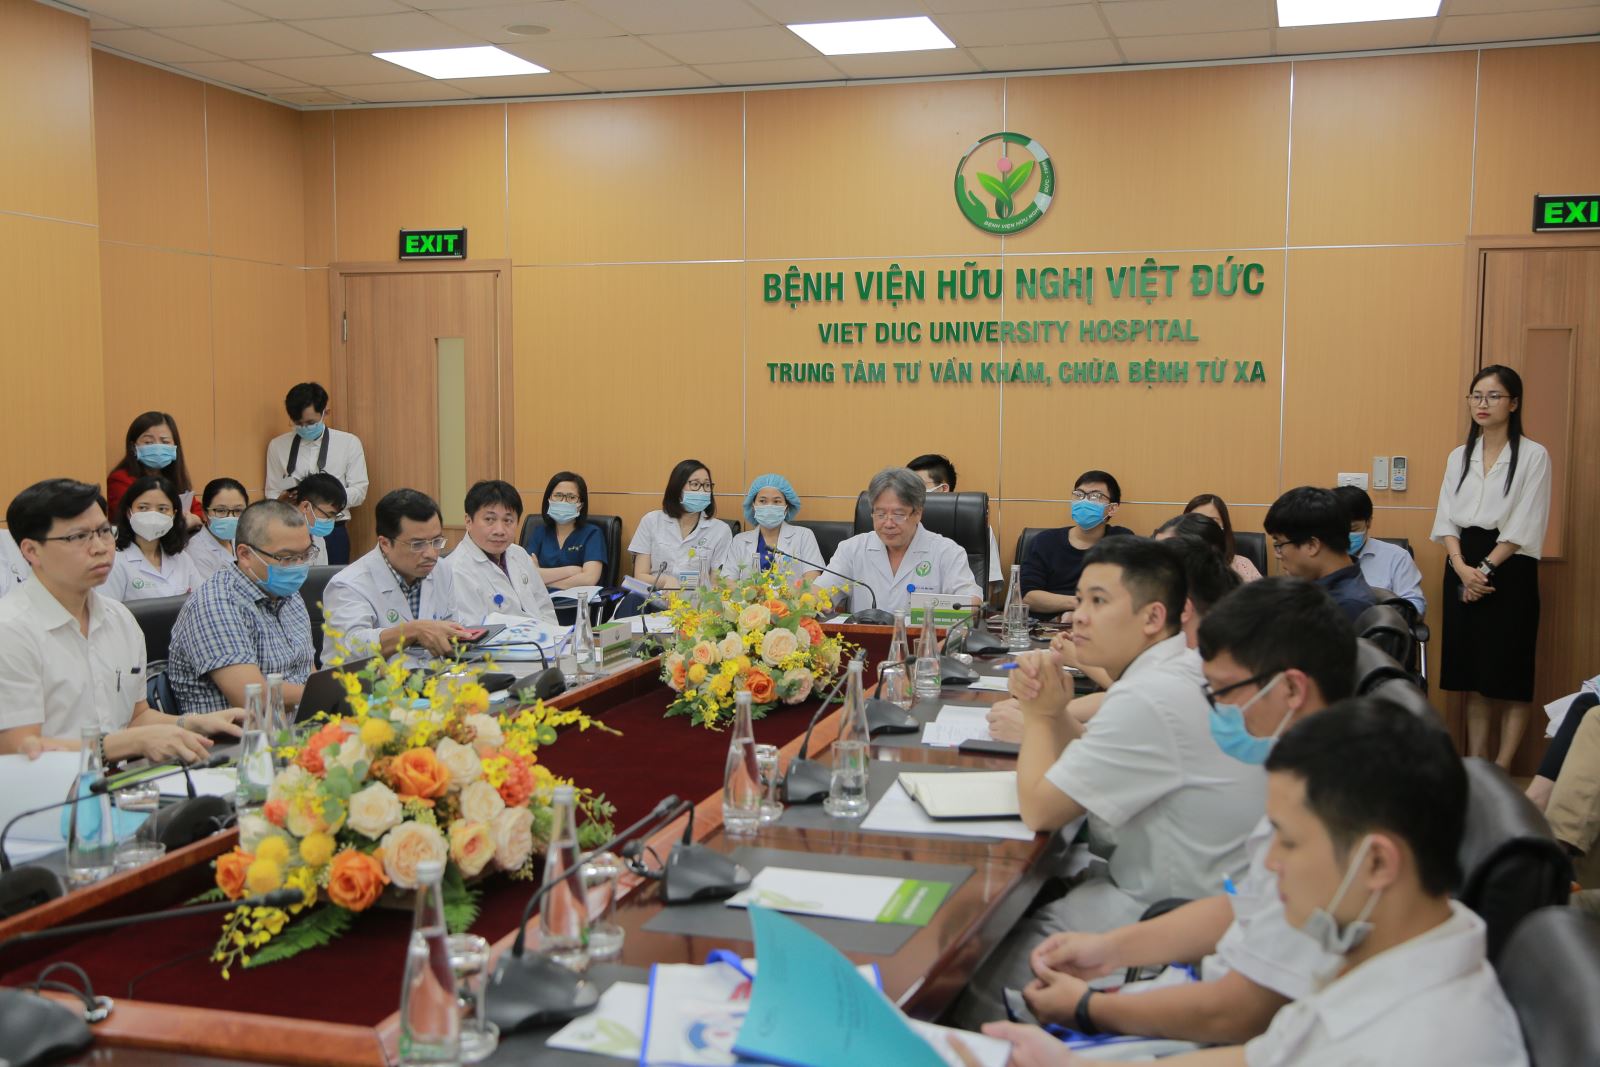 Đại diện Trung tâm DI&ADR Quốc gia tham dự Hội thảo “Chiến lược sử dụng kháng sinh trong ngoại khoa - nâng cao chất lượng chăm sóc sức khỏe người bệnh” tại Bệnh viện Hữu nghị Việt Đức